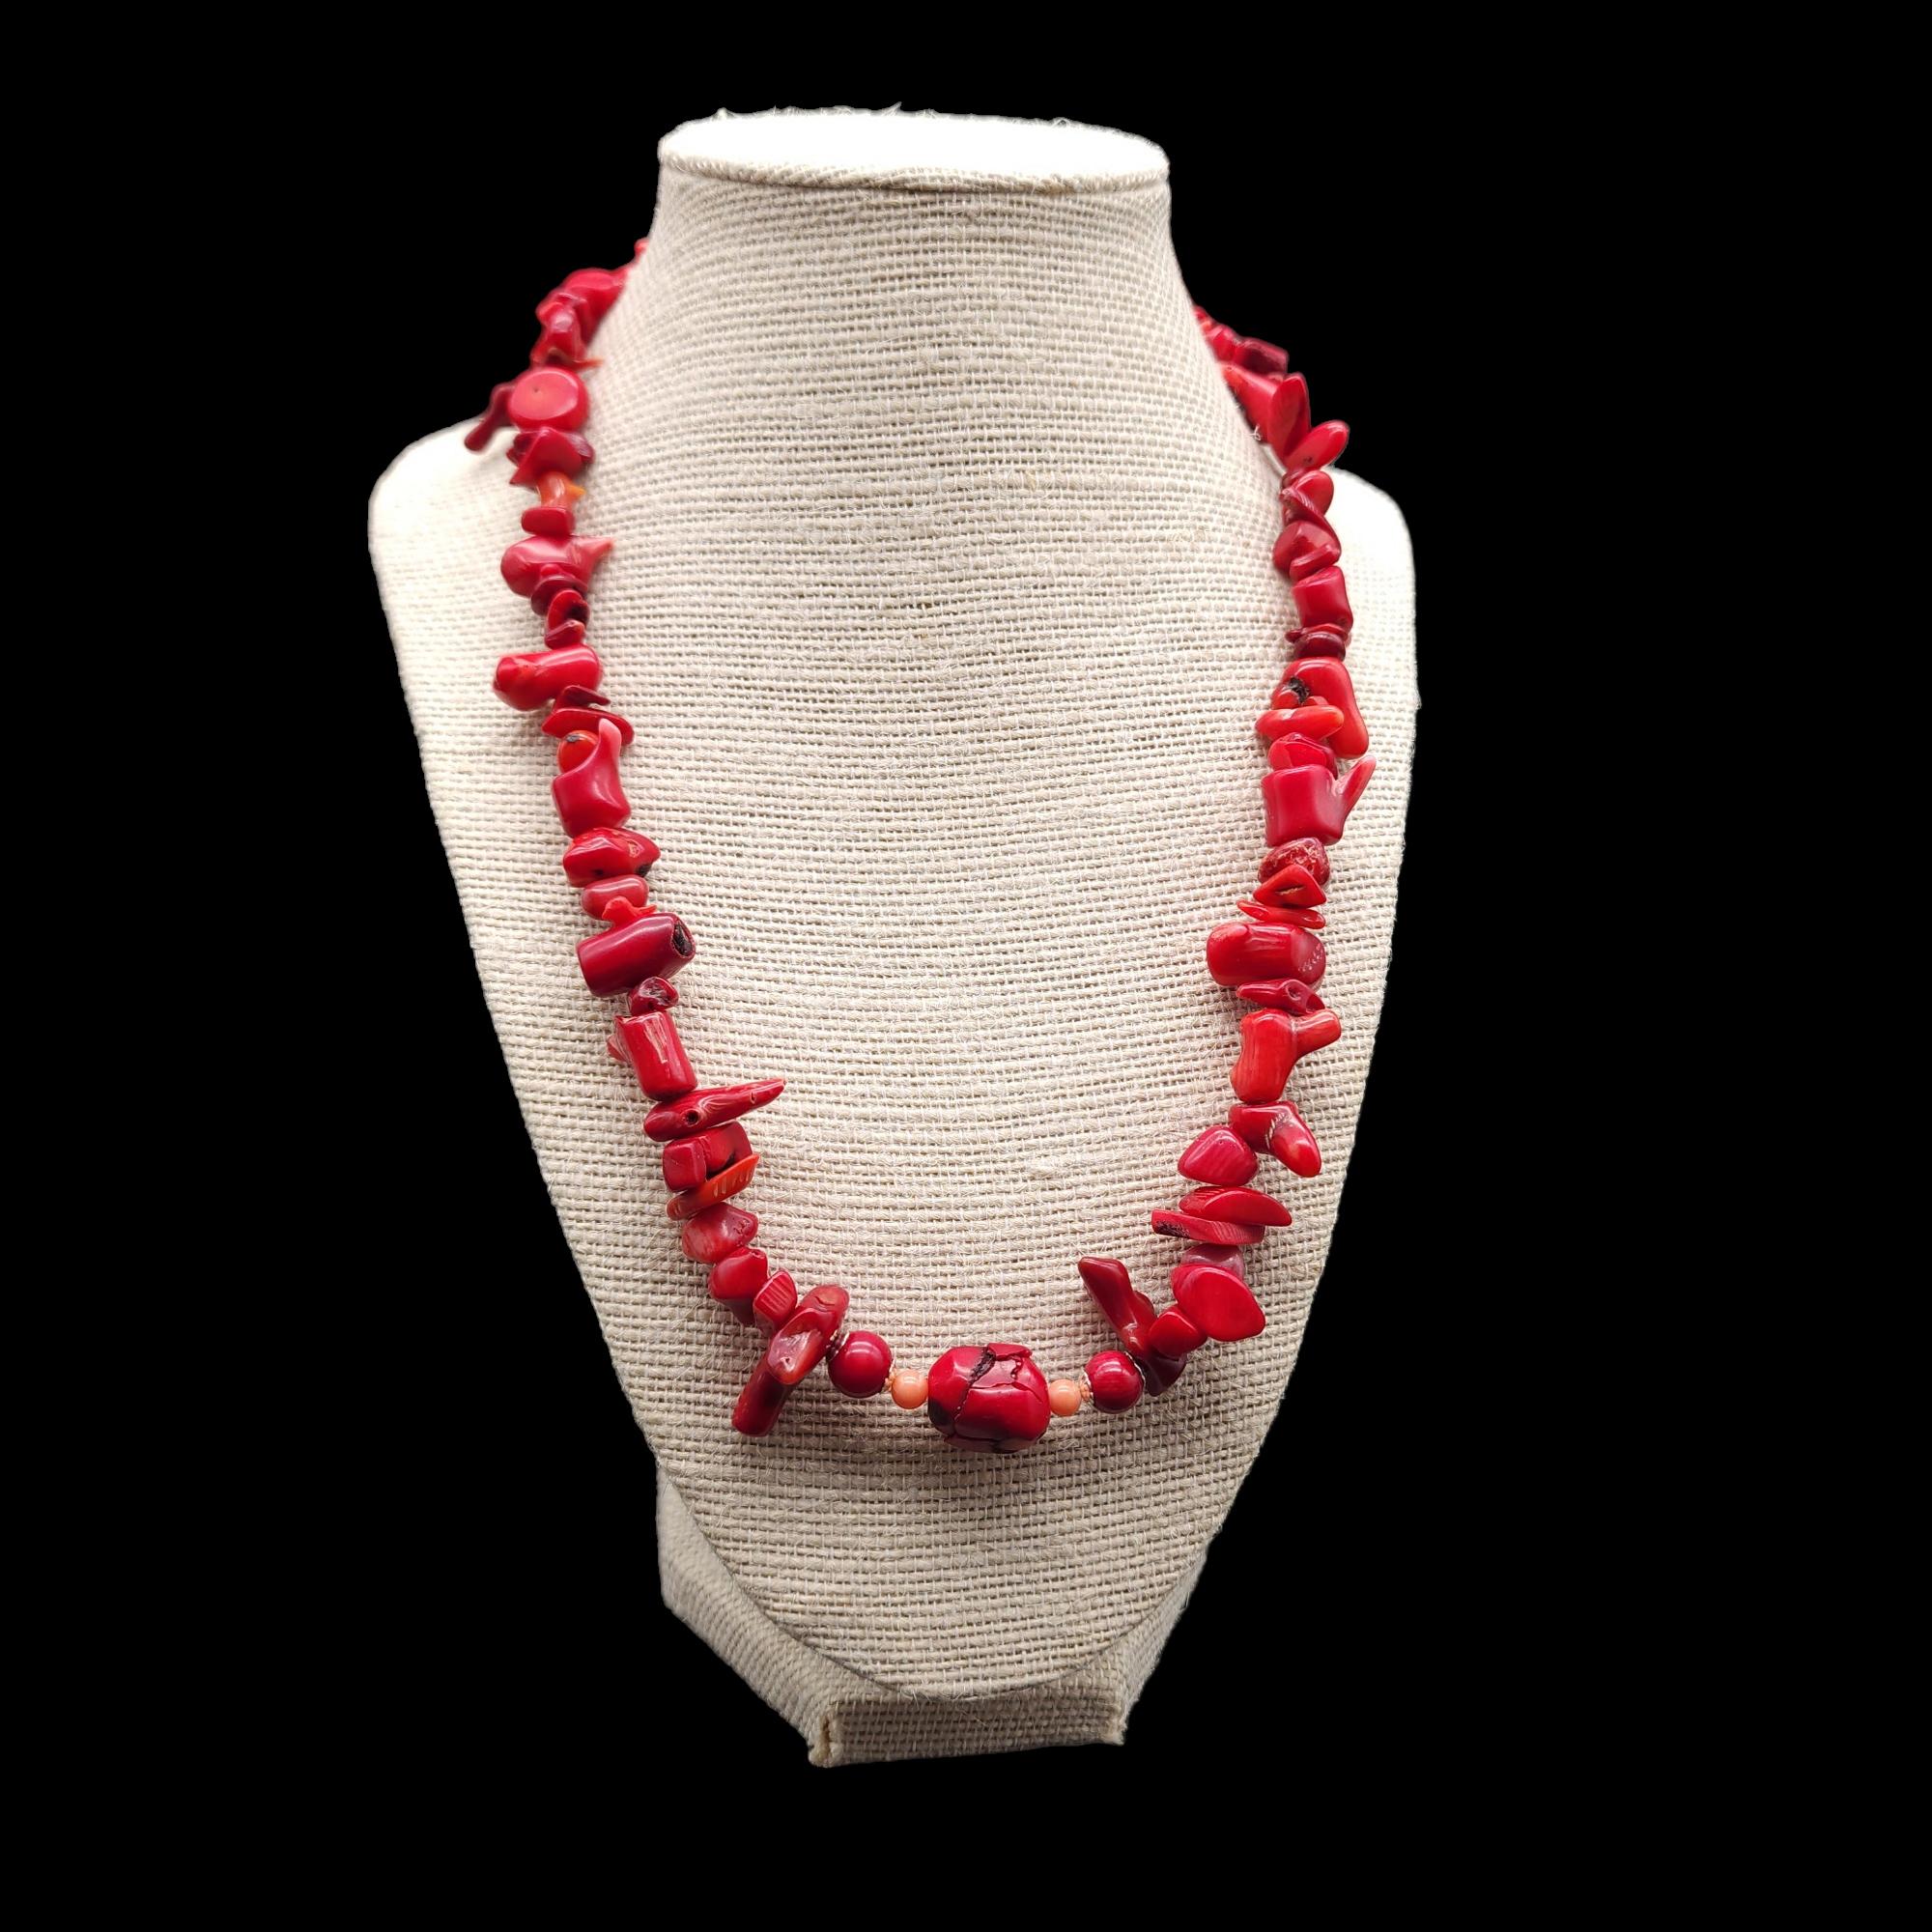 Verleihen Sie Ihrem Outfit einen Hauch von Eleganz und Raffinesse mit dieser atemberaubenden Halskette aus roter Koralle im Vintage-Stil. Diese Halskette besteht aus natürlichen roten Korallen in verschiedenen Formen und Größen, die einen schönen